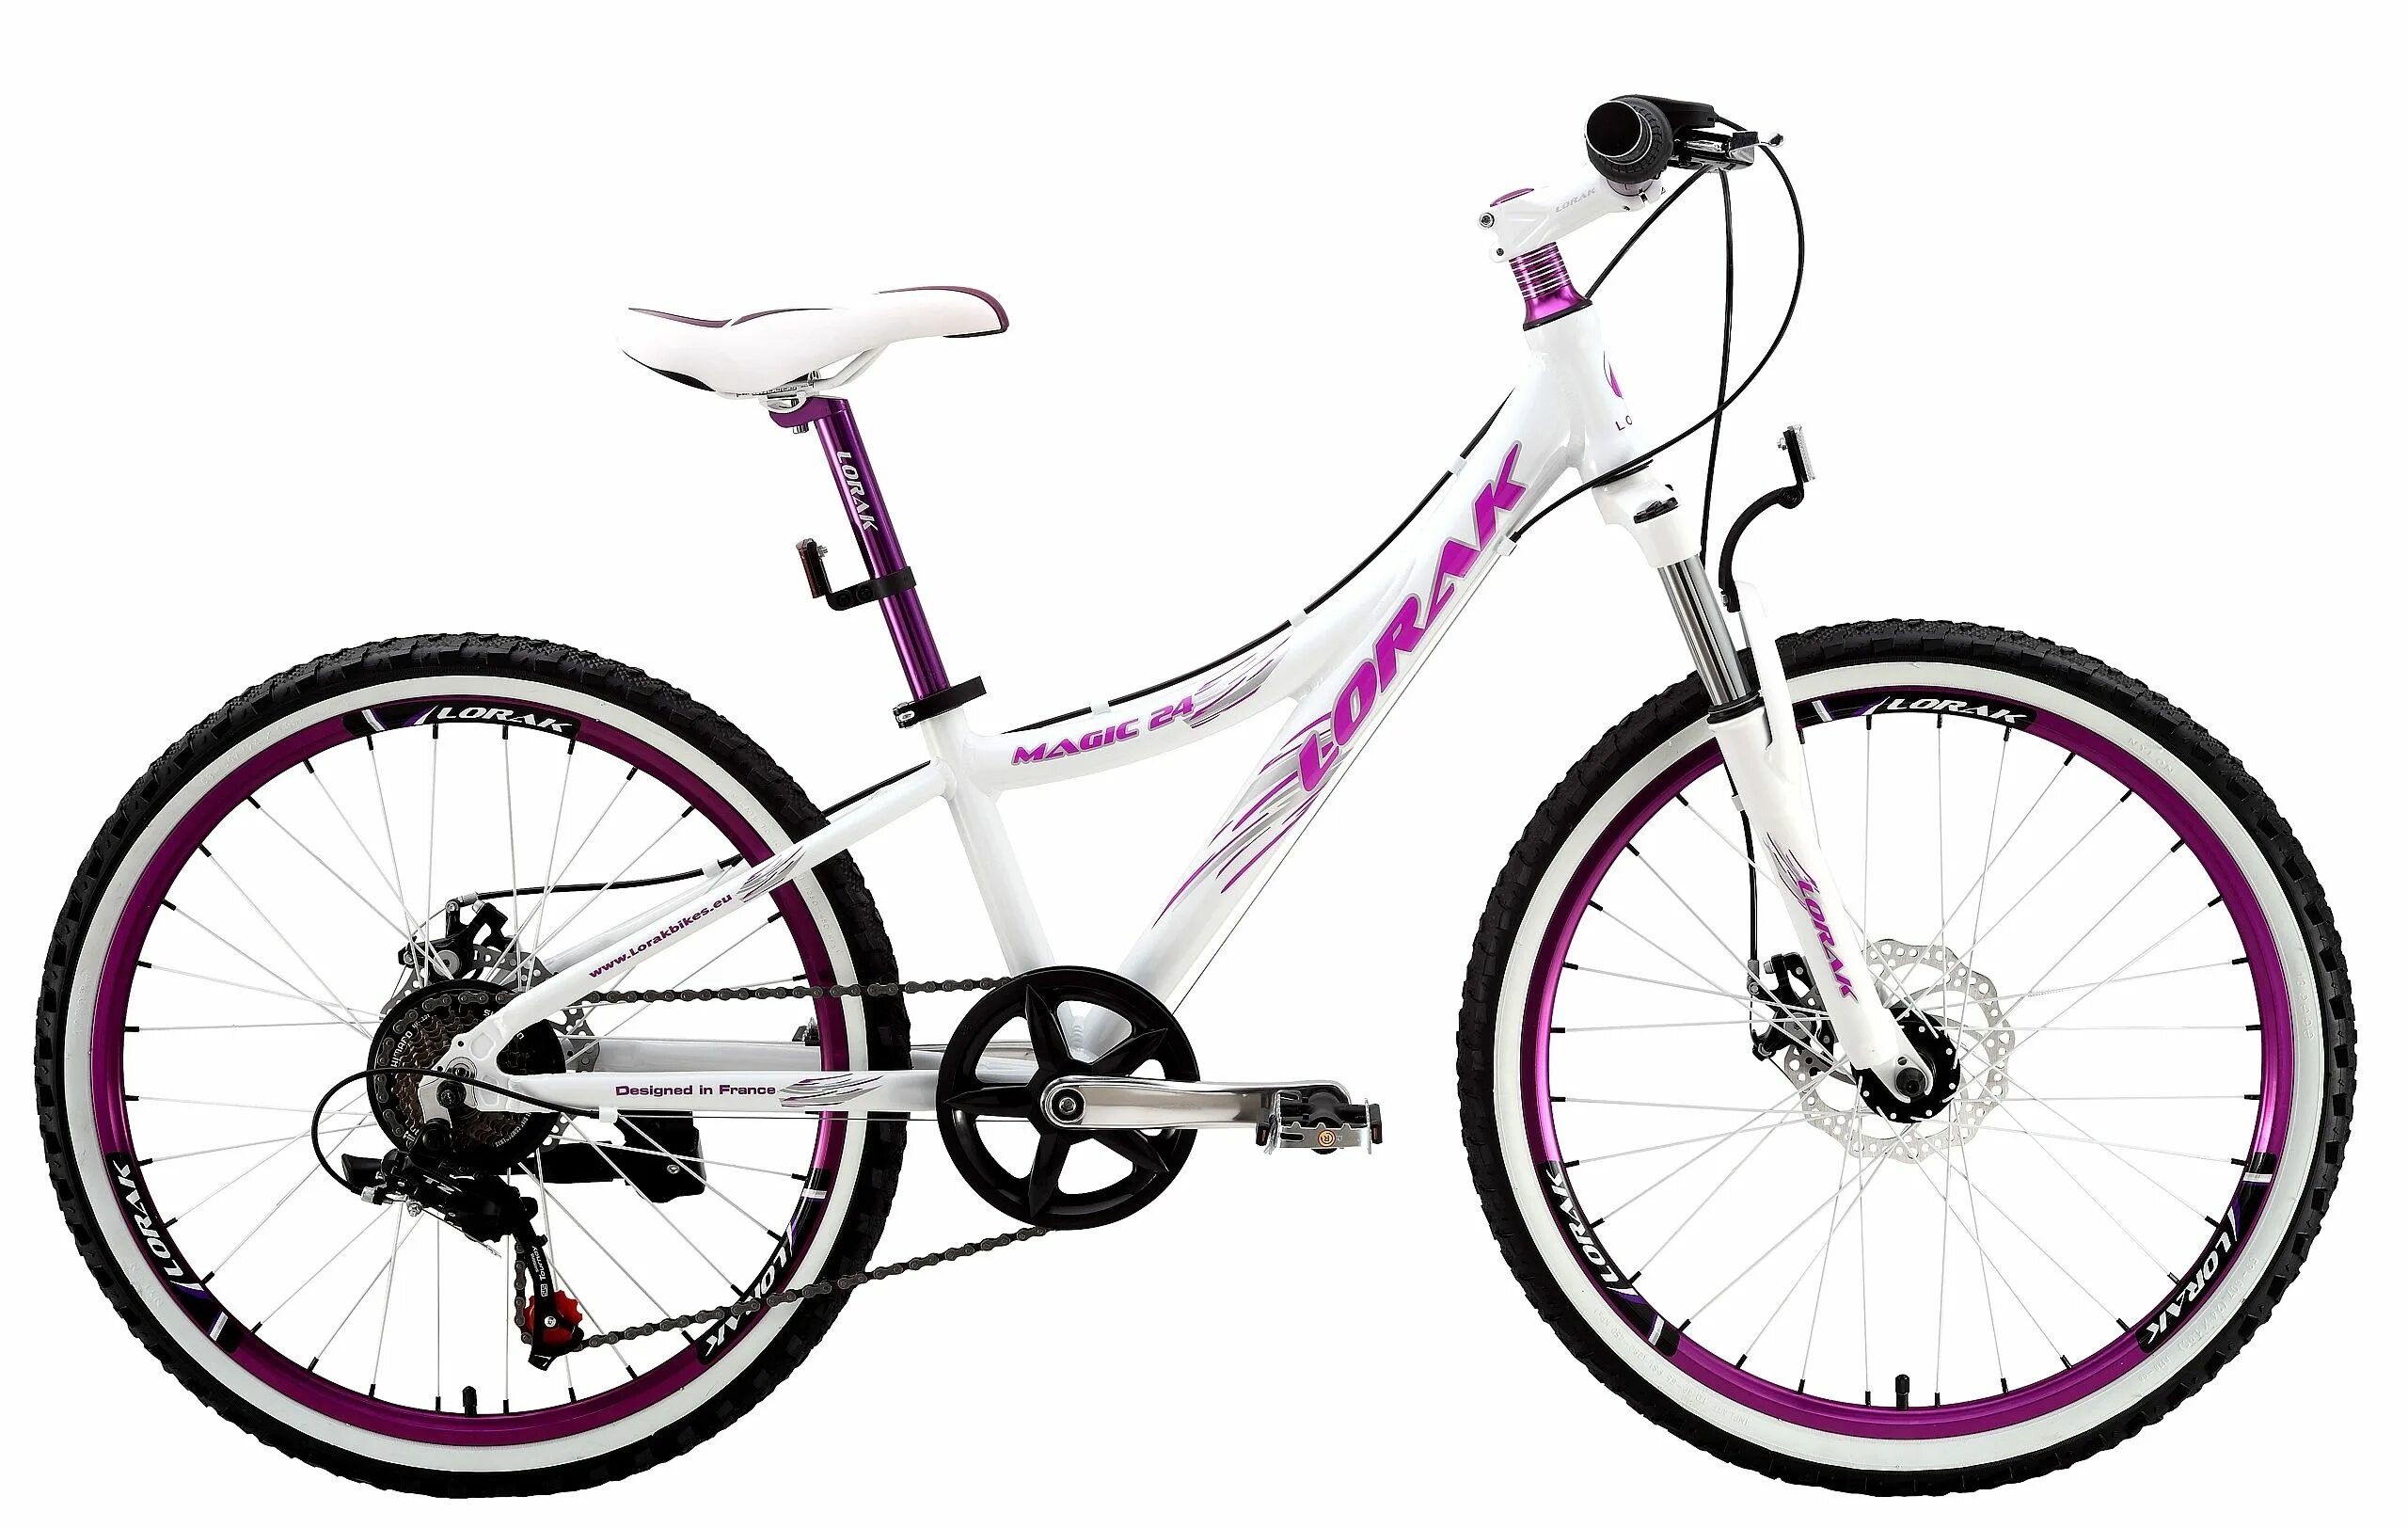 Велосипед детский 24 дюйма купить. Велосипед Лорак Мэджик 24. Детский велосипед Lorak Magic 24. Велосипед Лорак 24 дюйма. Подростковый горный (MTB) велосипед Lorak Magic 24 21s (2015).